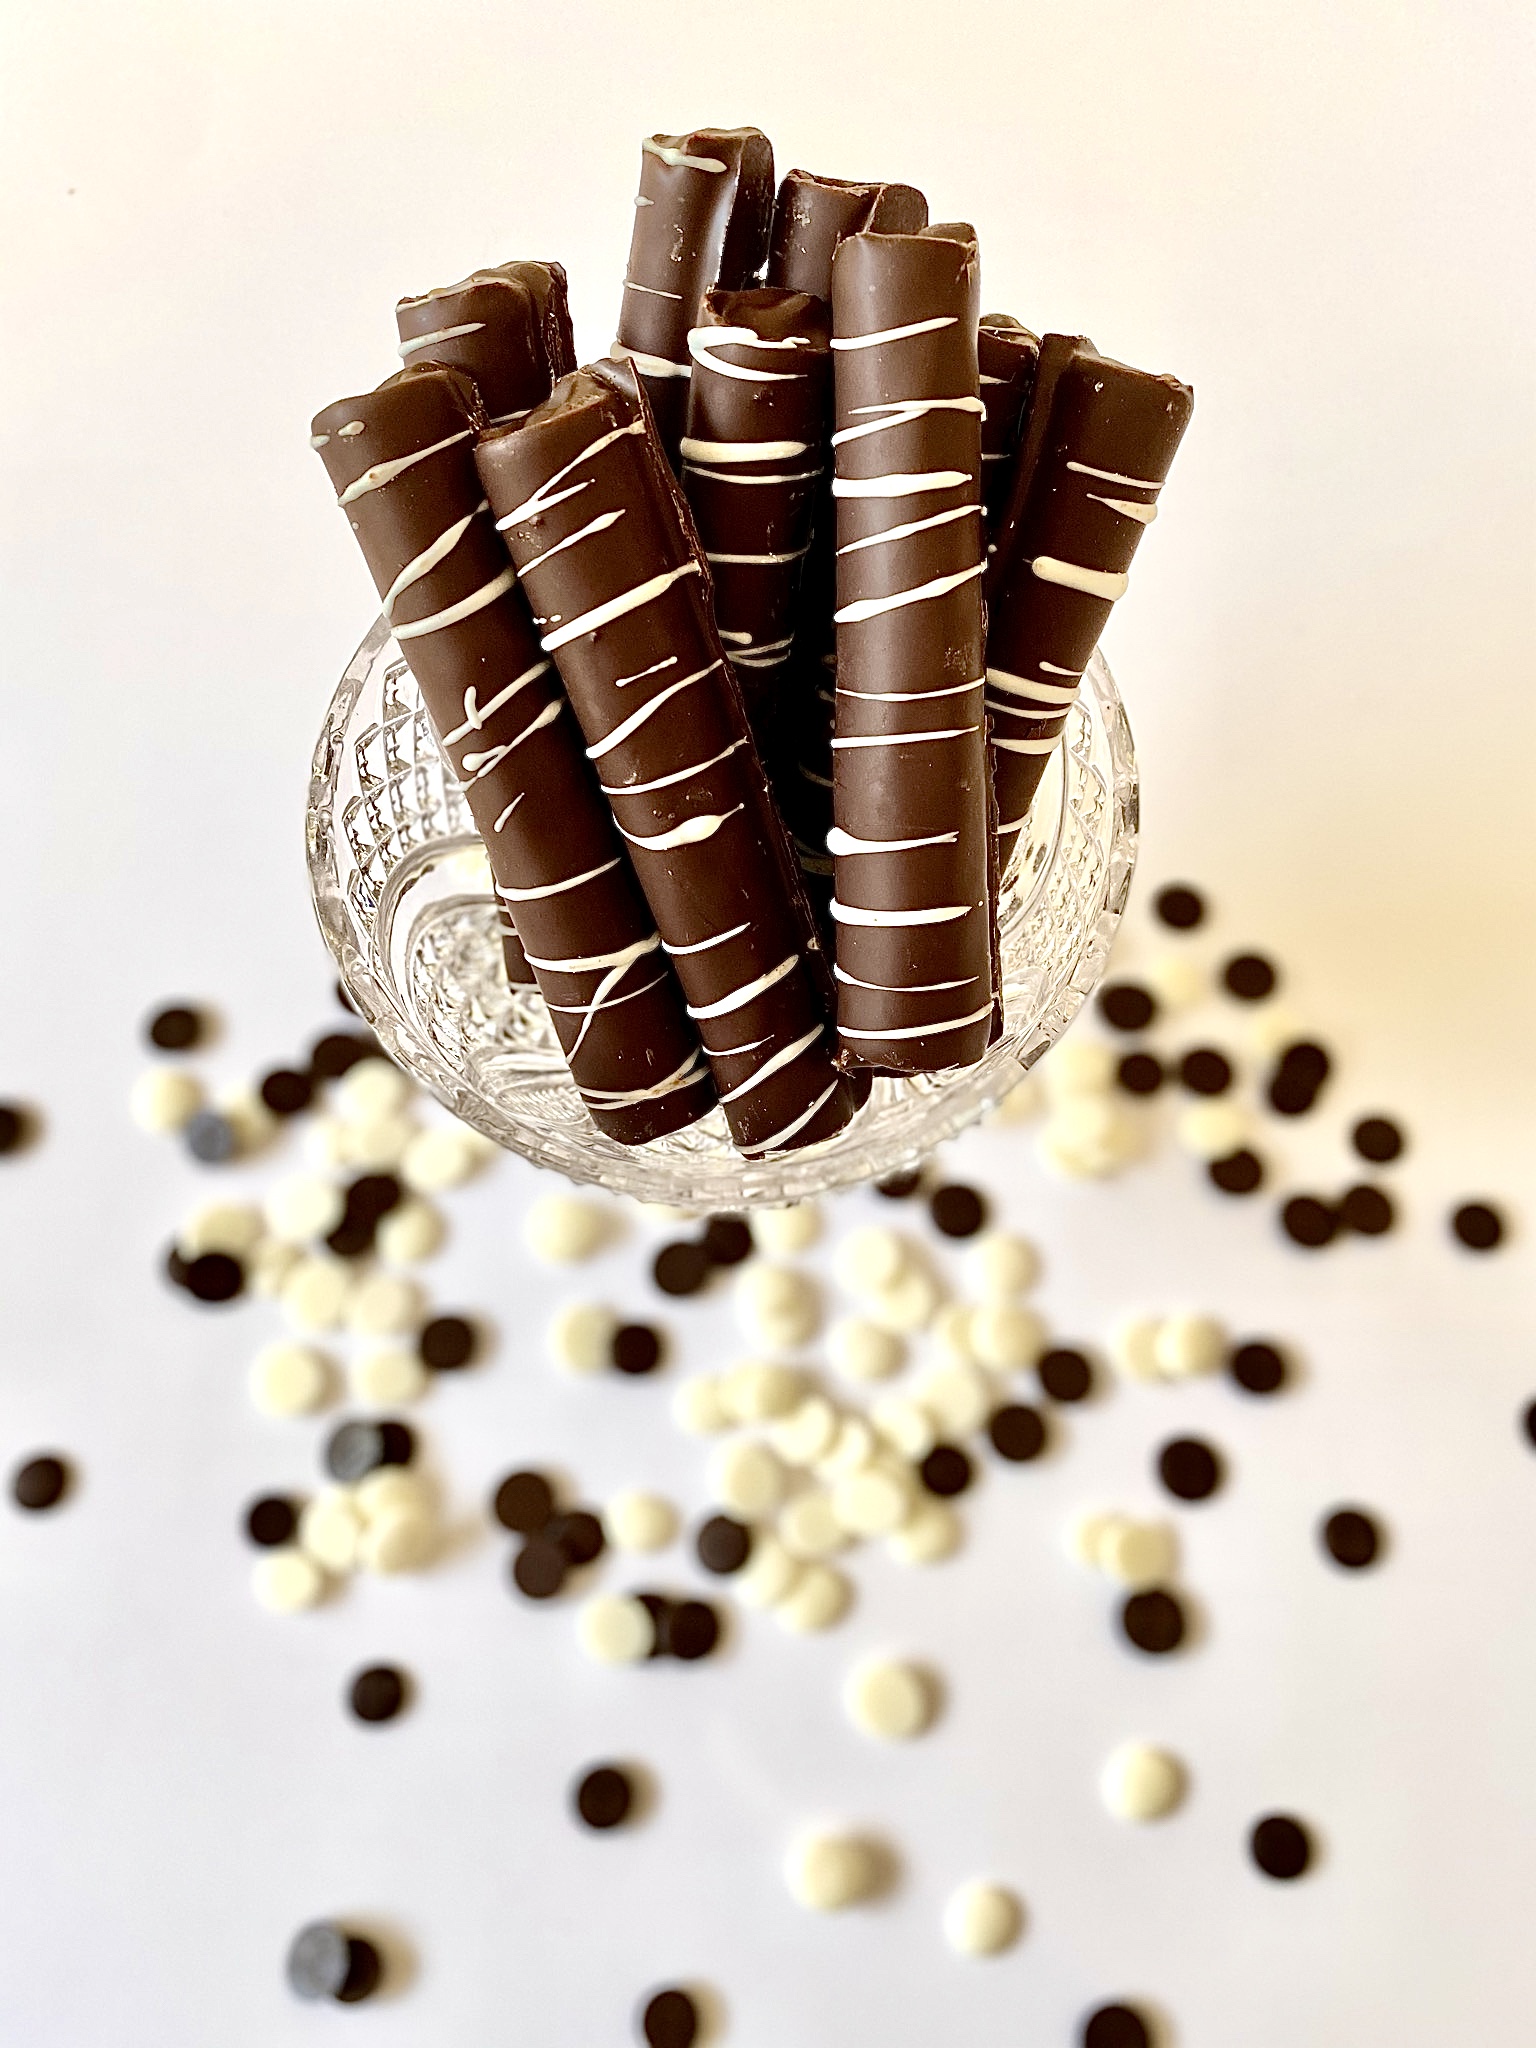 Kolu chocolates 3